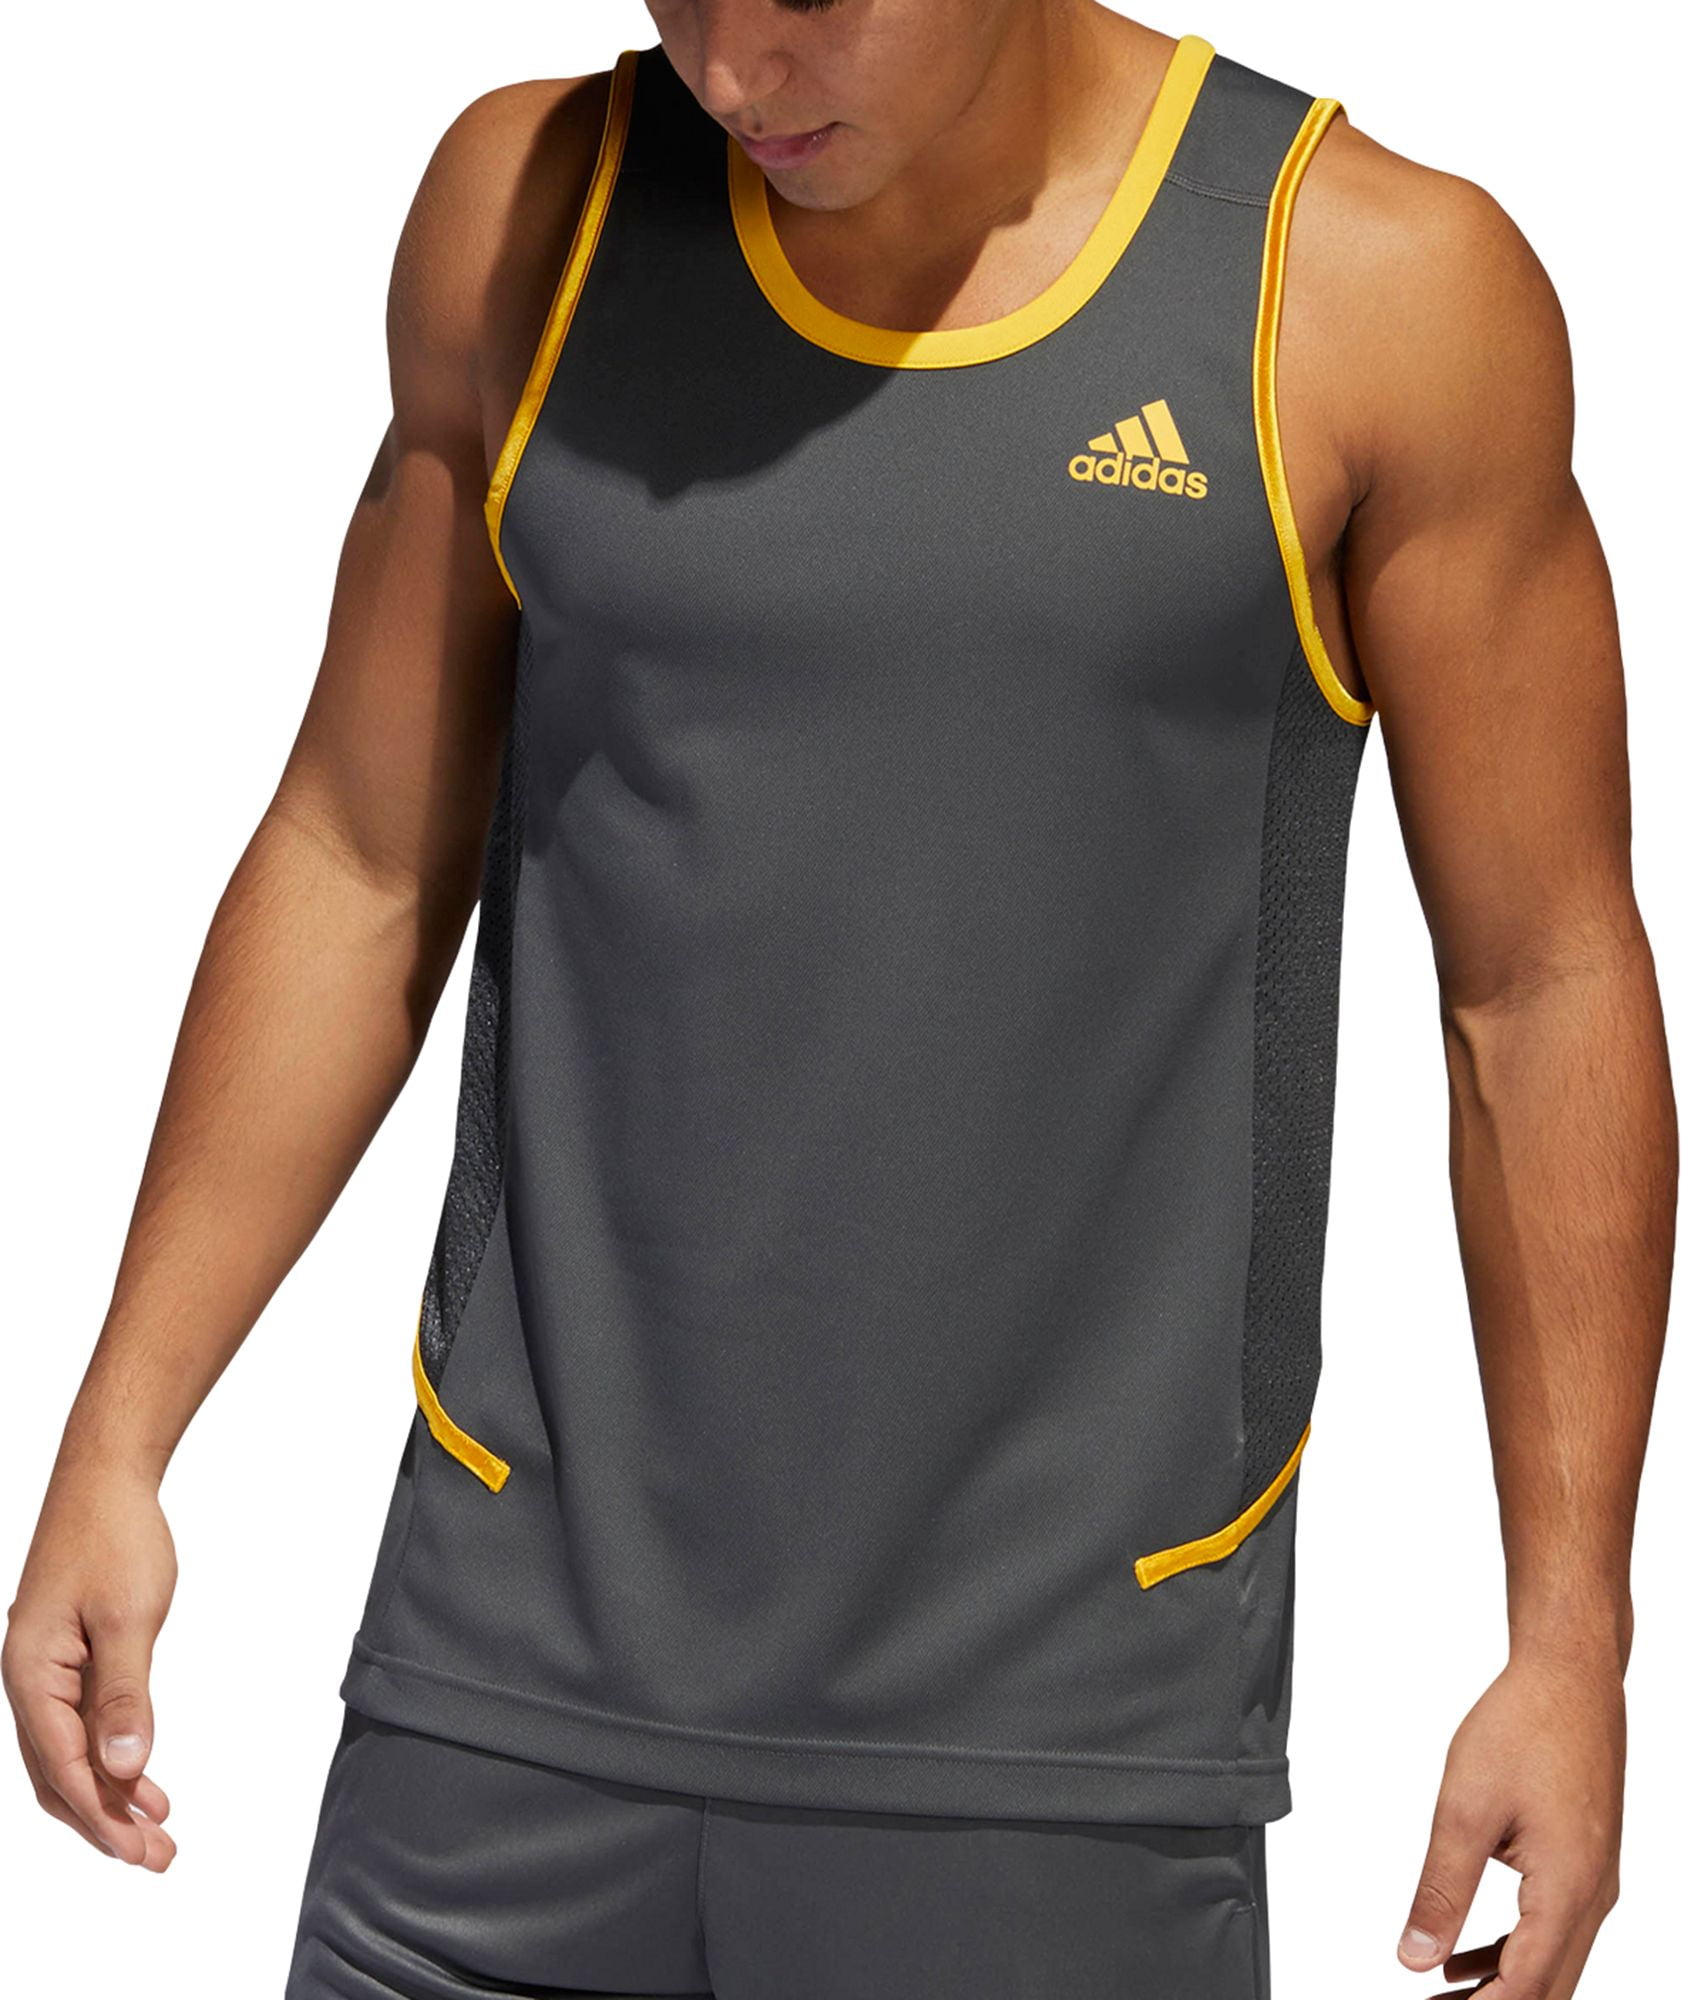 Adidas - adidas Men's Accelerate Basketball Tank Top - Walmart.com ...